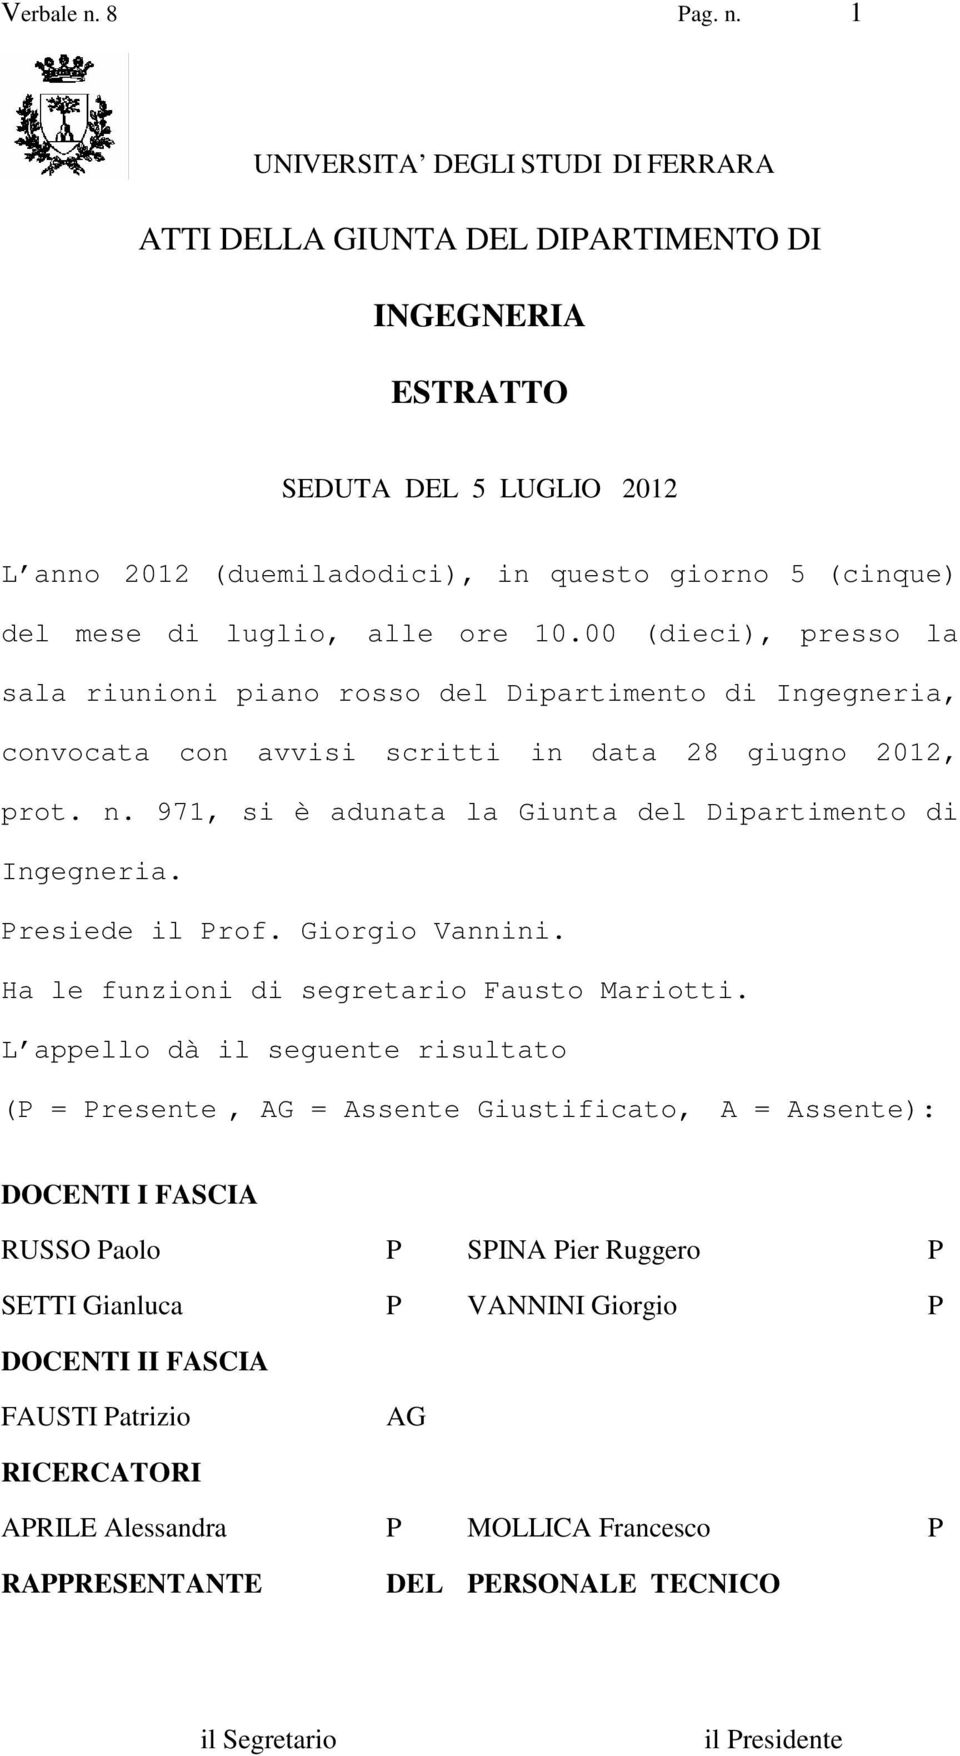 971, si è adunata la Giunta del Dipartimento di Ingegneria. Presiede il Prof. Giorgio Vannini. Ha le funzioni di segretario Fausto Mariotti.